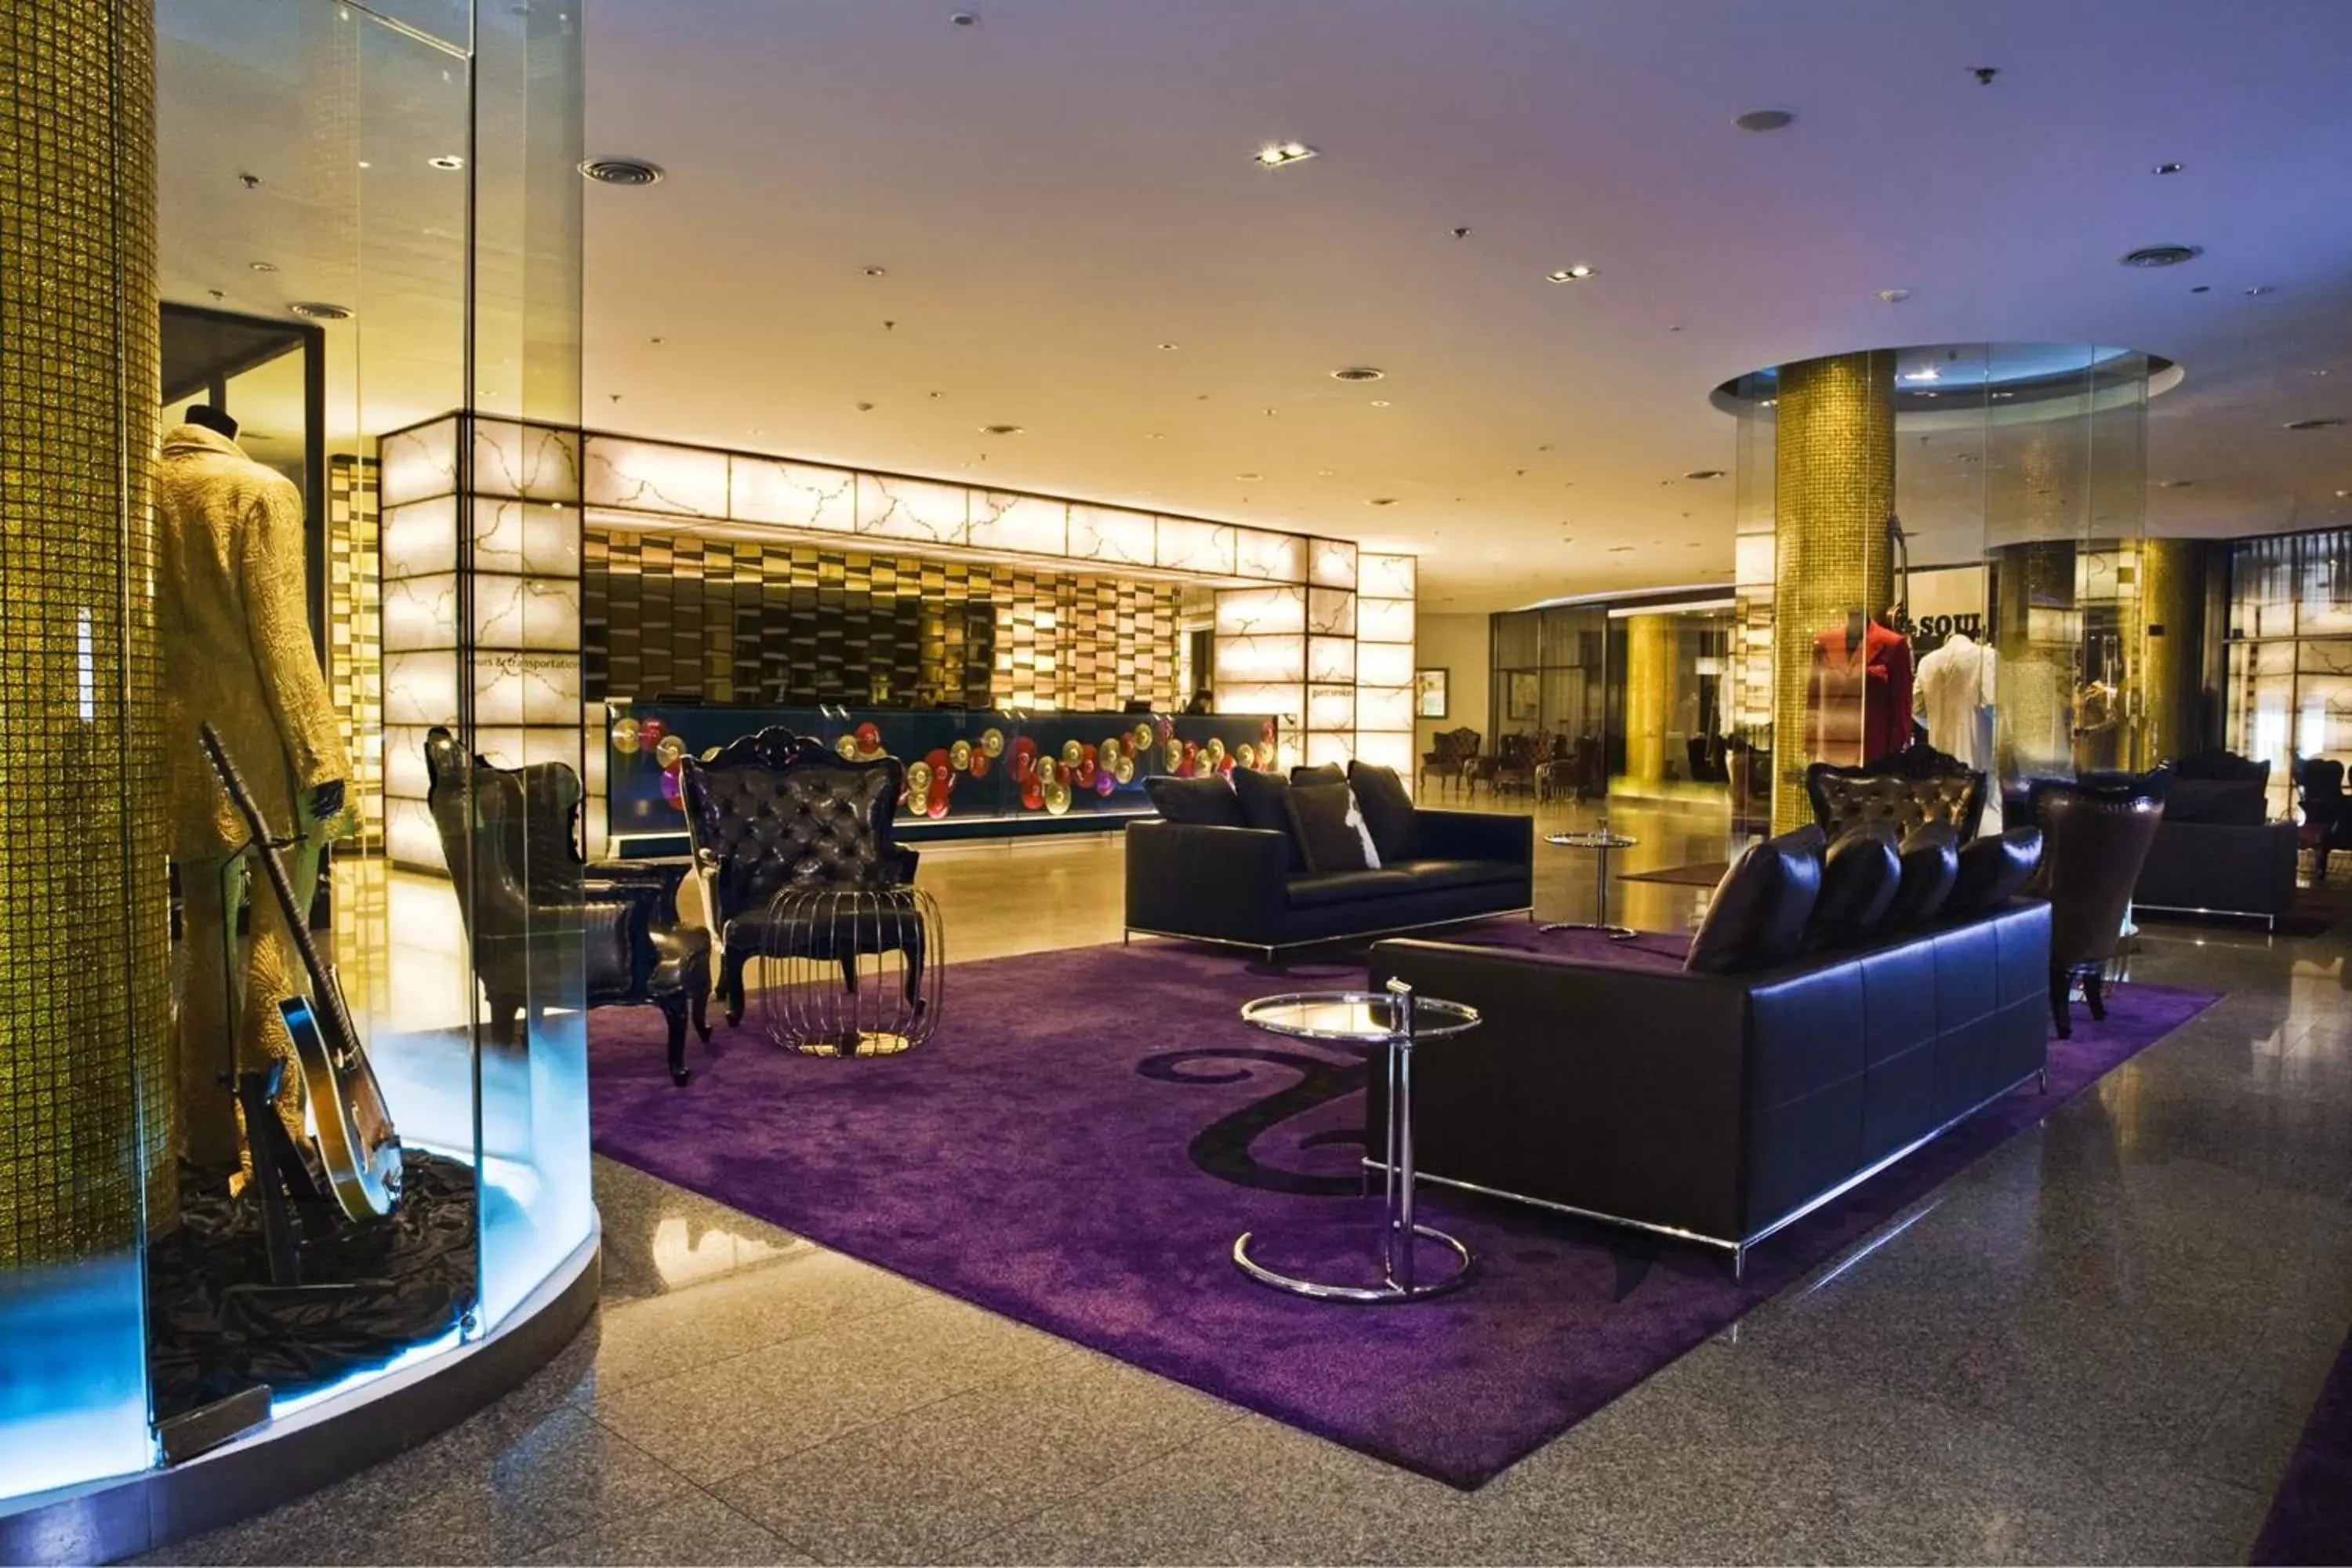 Lobby or reception, Lobby/Reception in Hard Rock Hotel Pattaya (SHA Plus)